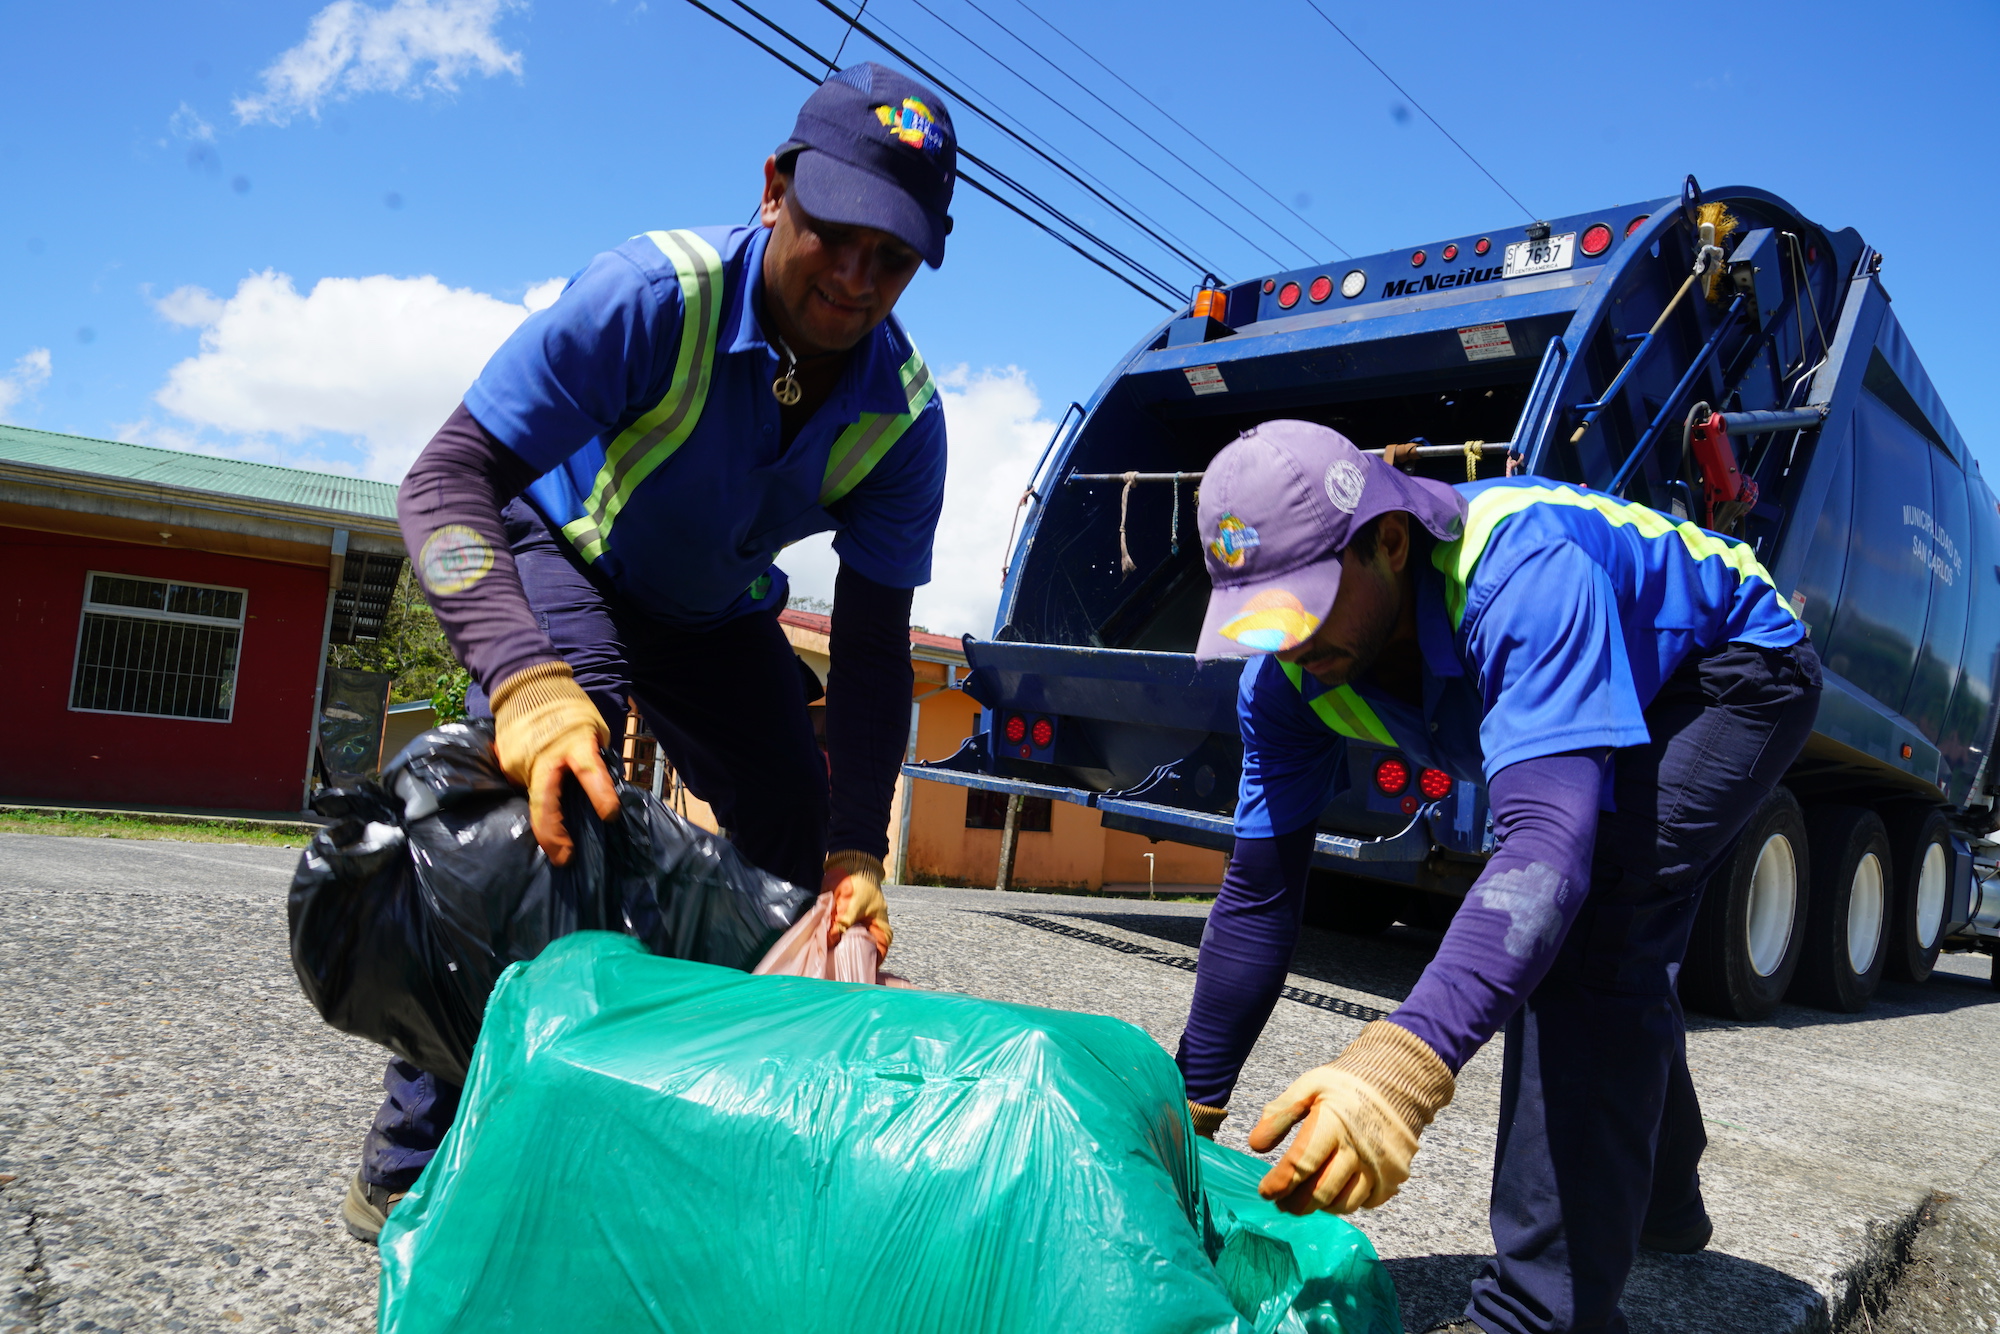 Campaña #EntreHéroesNosCuidamos reforzará buenas prácticas de gestión de residuos en el marco de COVID-19